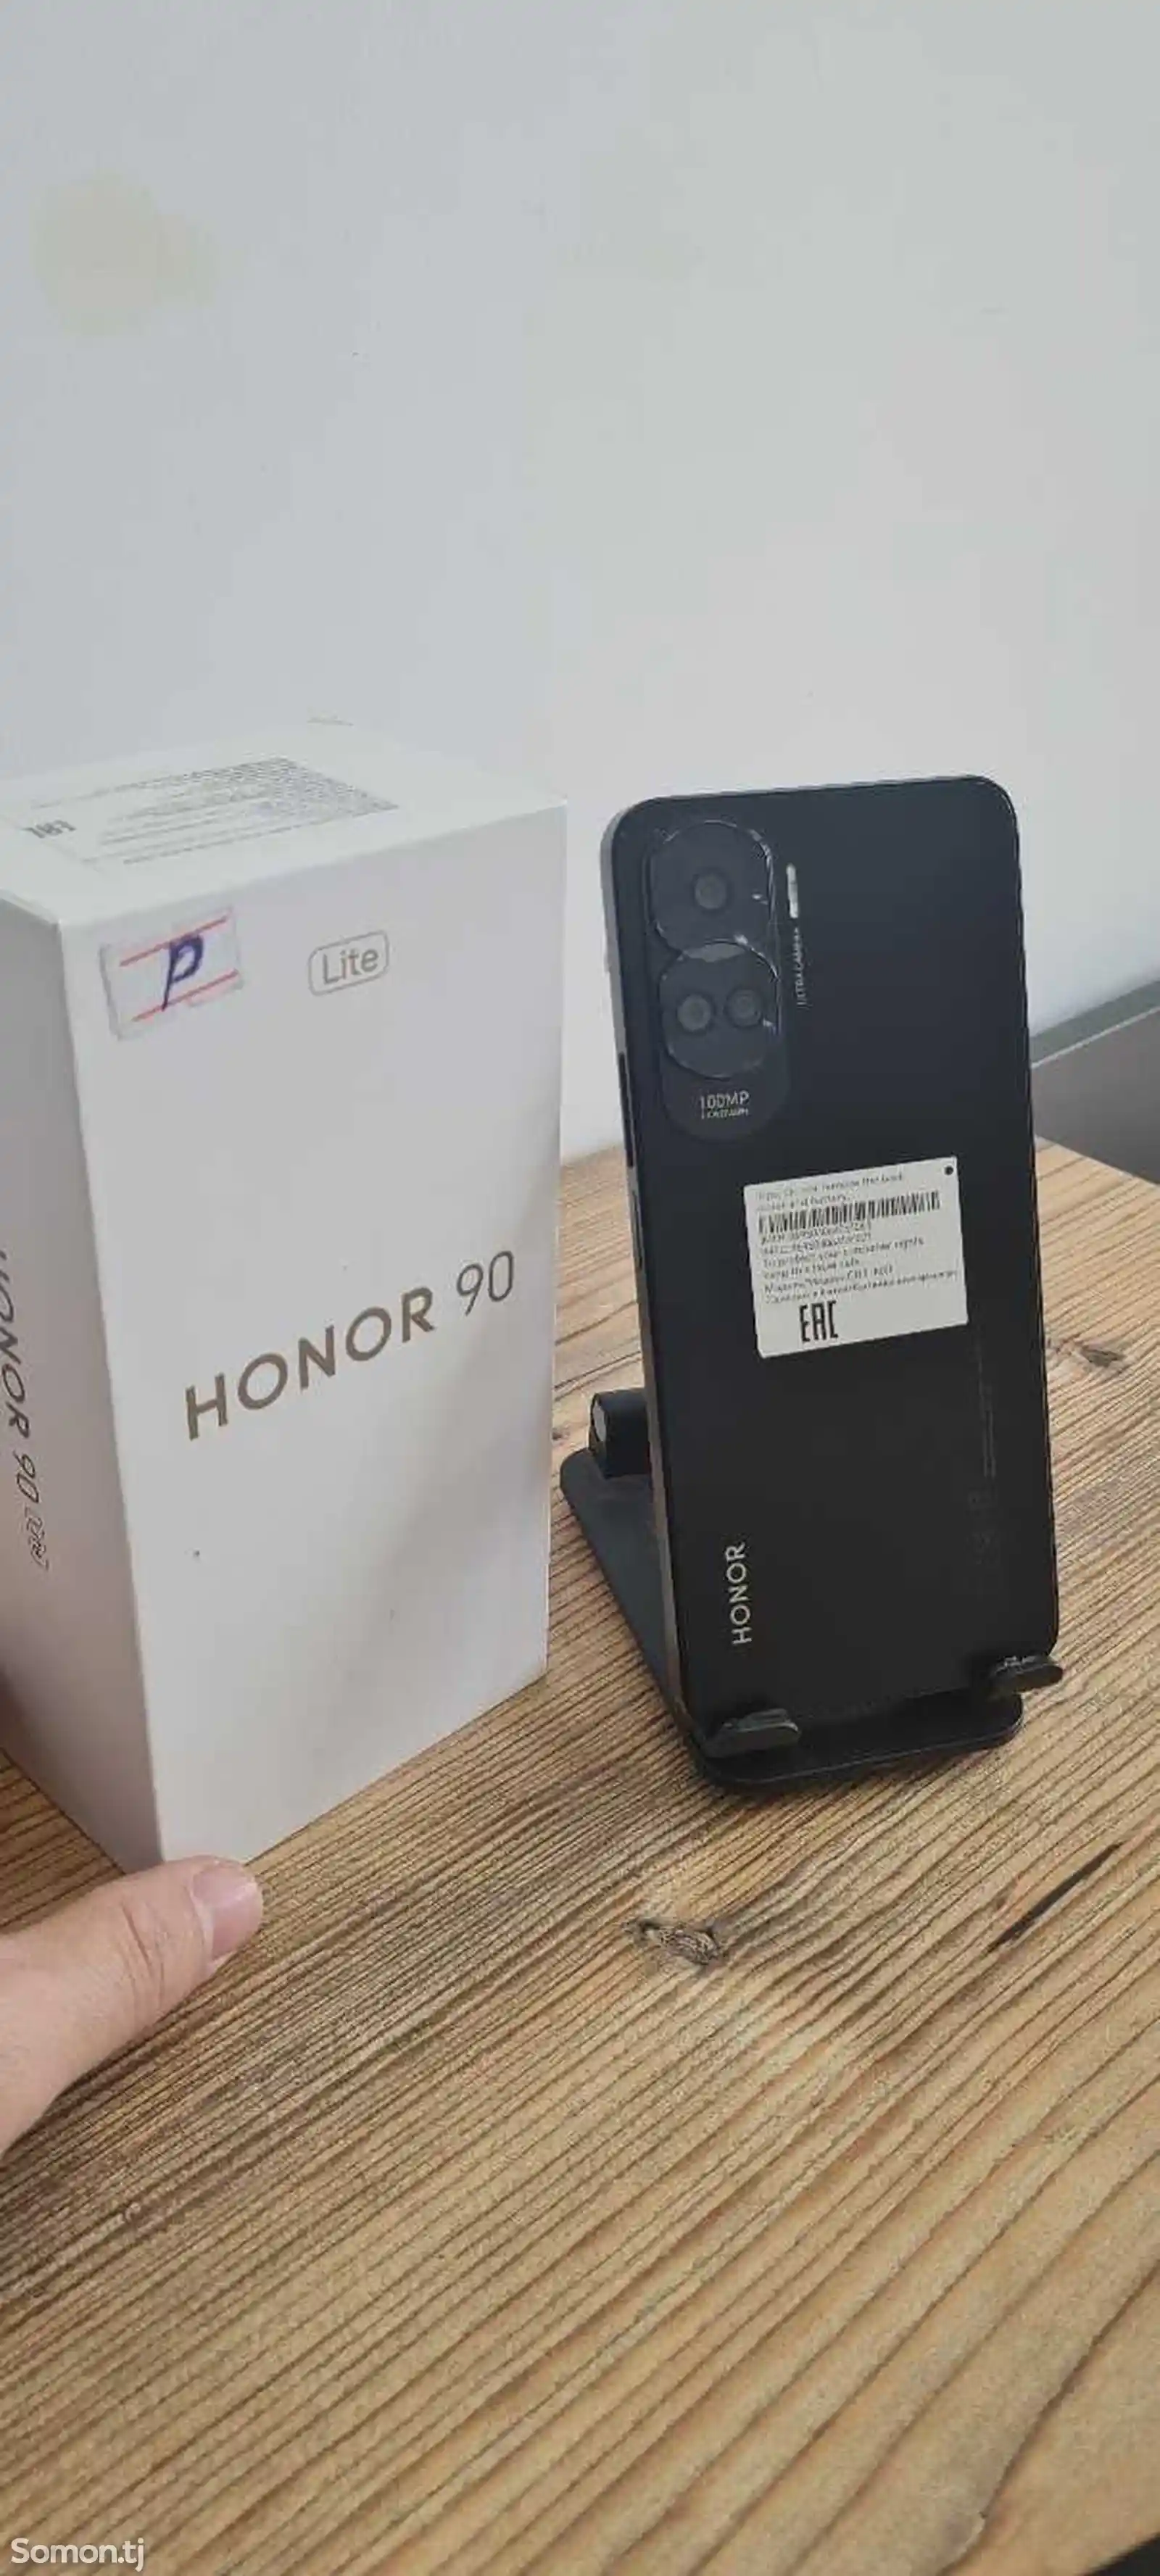 Huawei Нonor 90 Lite